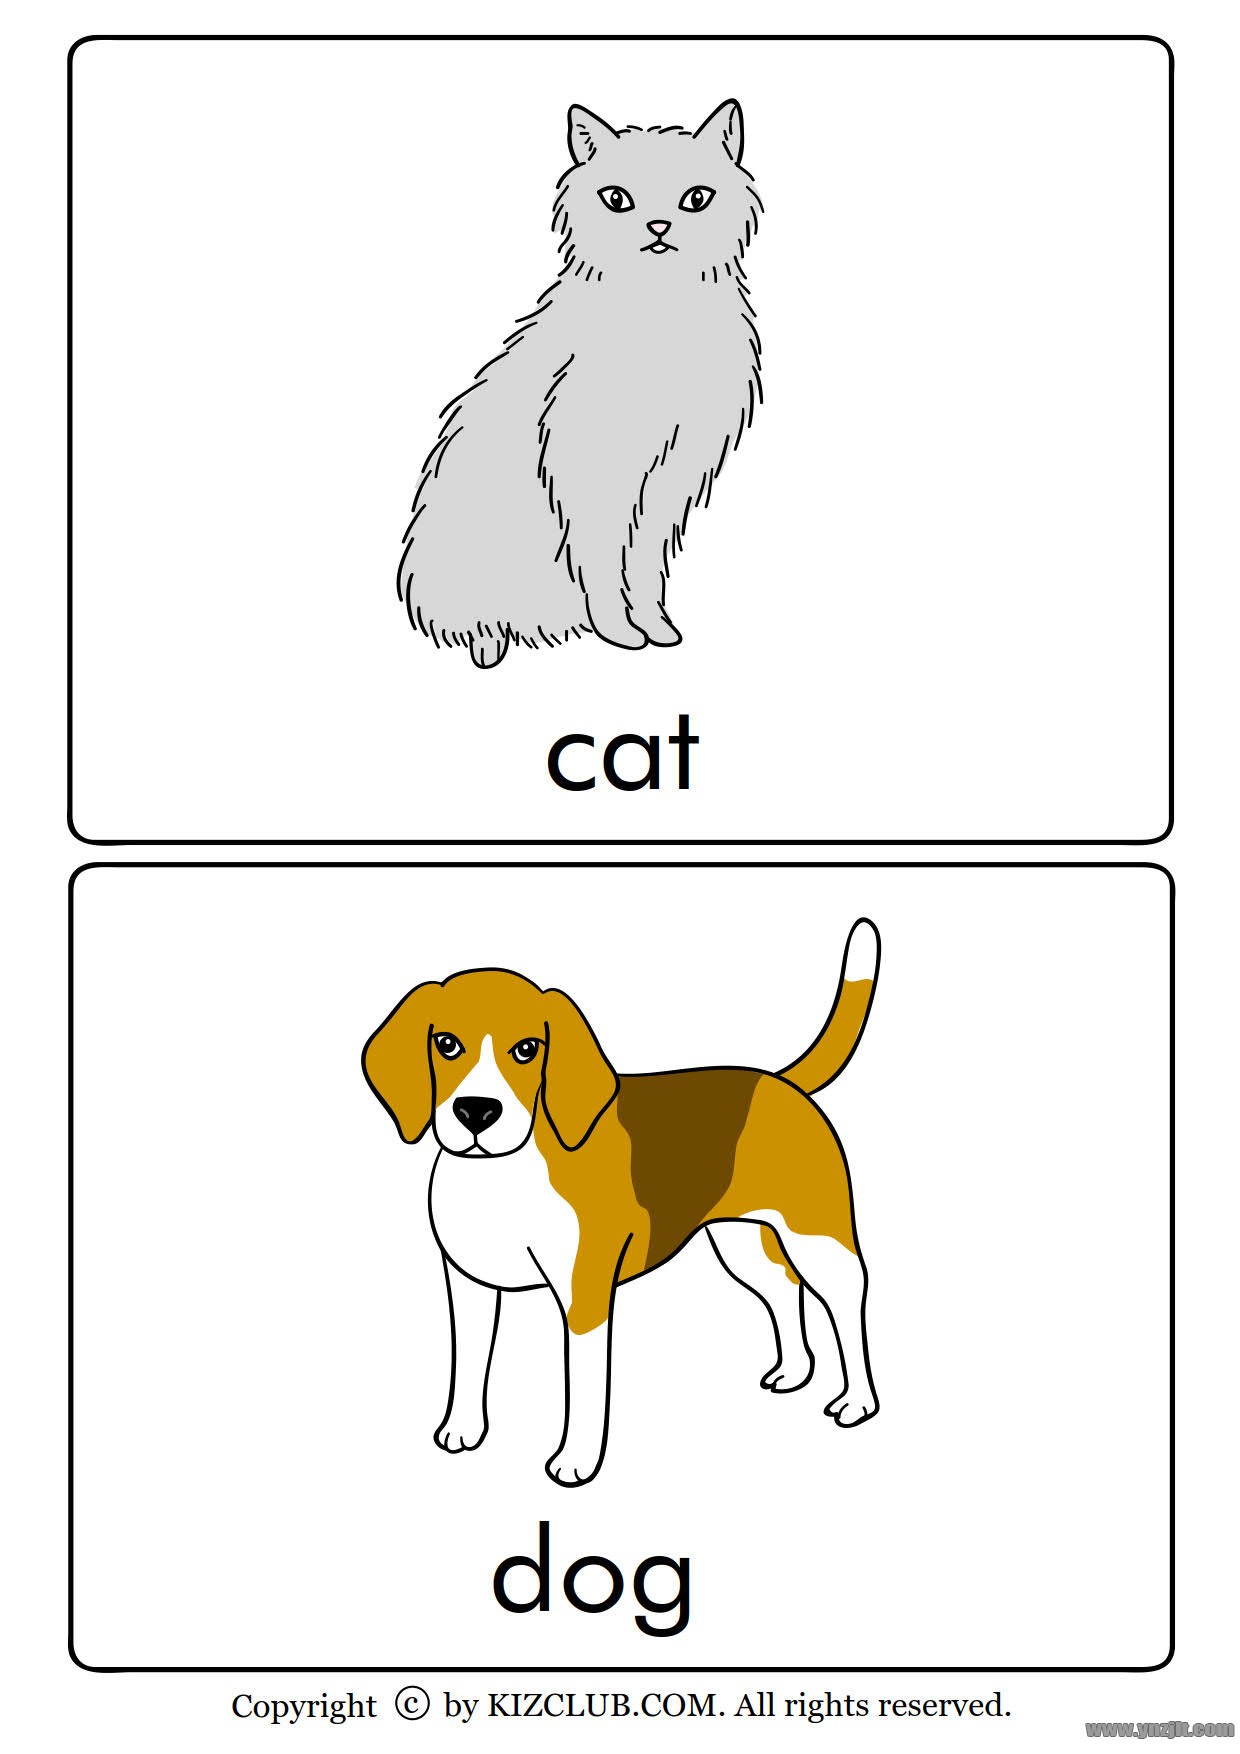 全套动物英文单词卡片高清版可打印适合孩子英语启蒙学习的有趣卡片